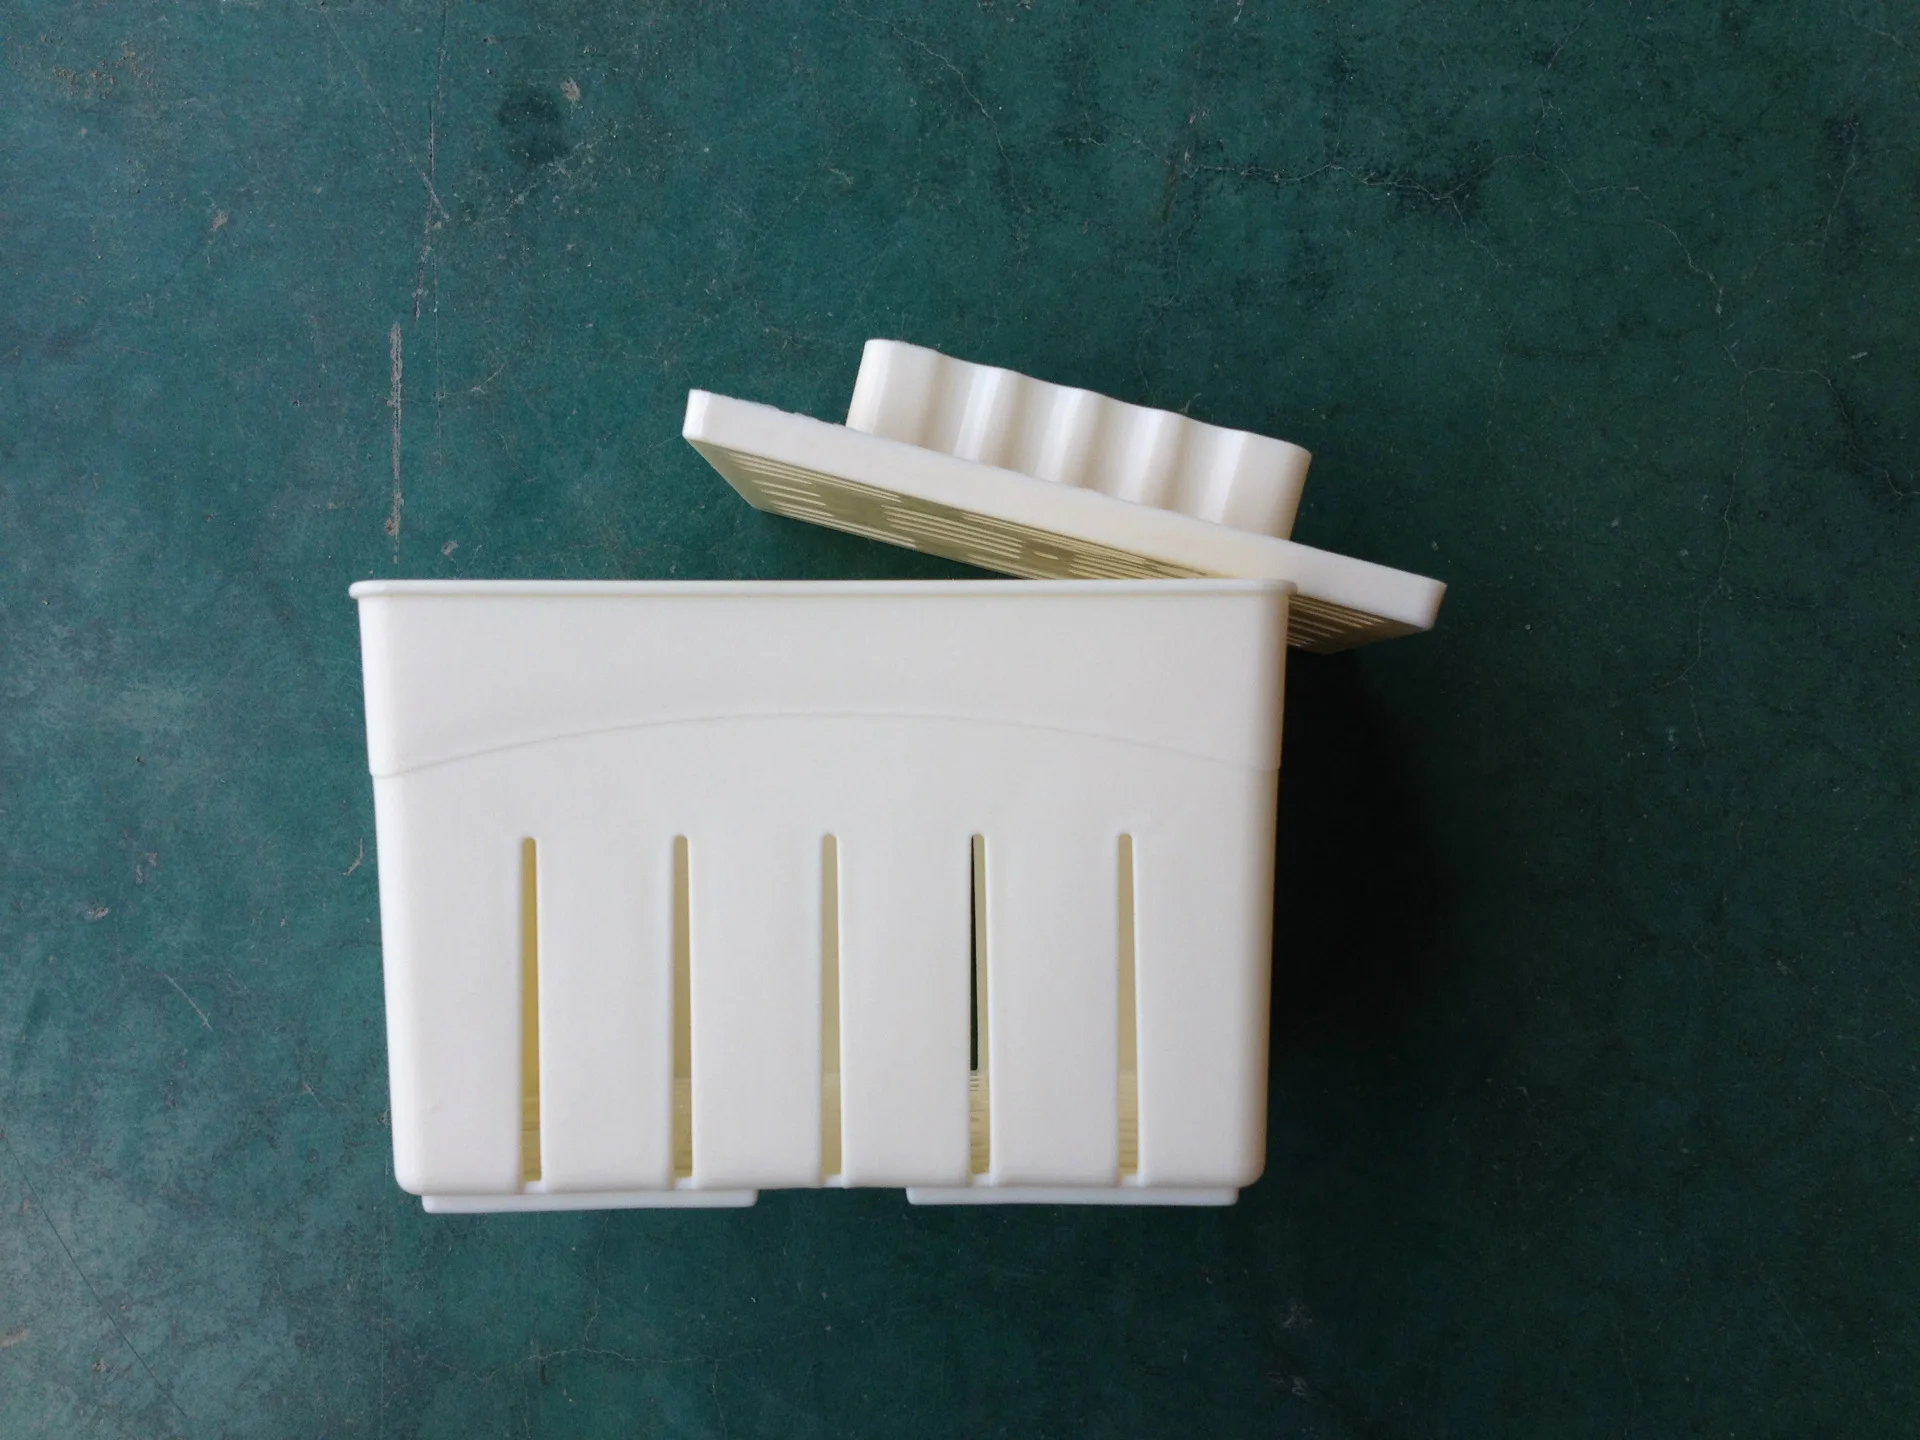 Тофу формы пластиковые формочки фасоли самоизготовленные пластиковые фасоли творожный ящик напрямую от производителя продажи